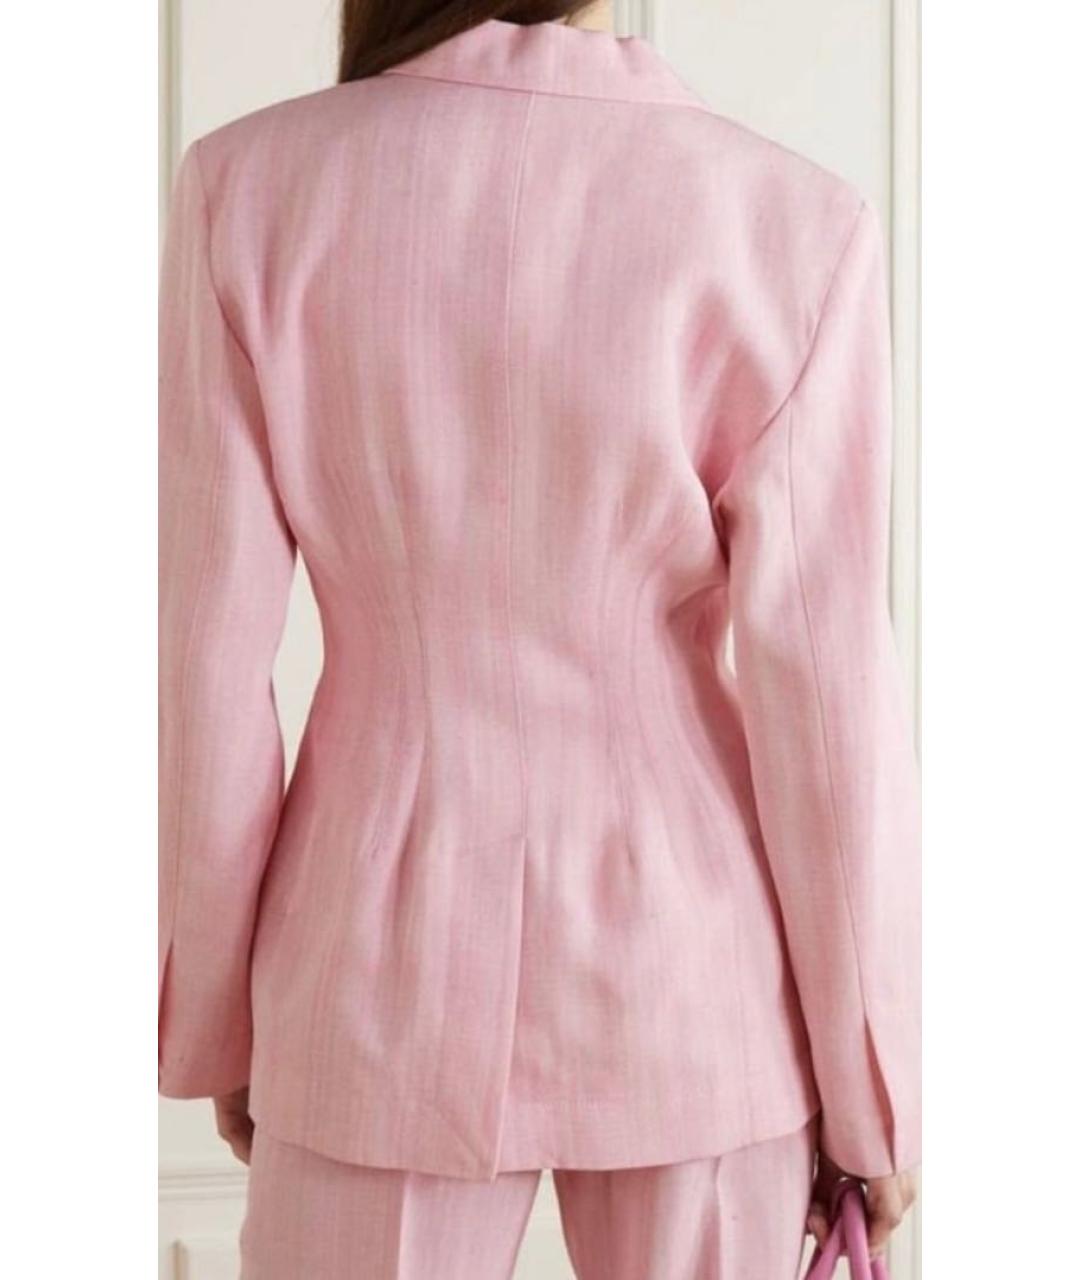 JACQUEMUS Розовый вискозный жакет/пиджак, фото 3